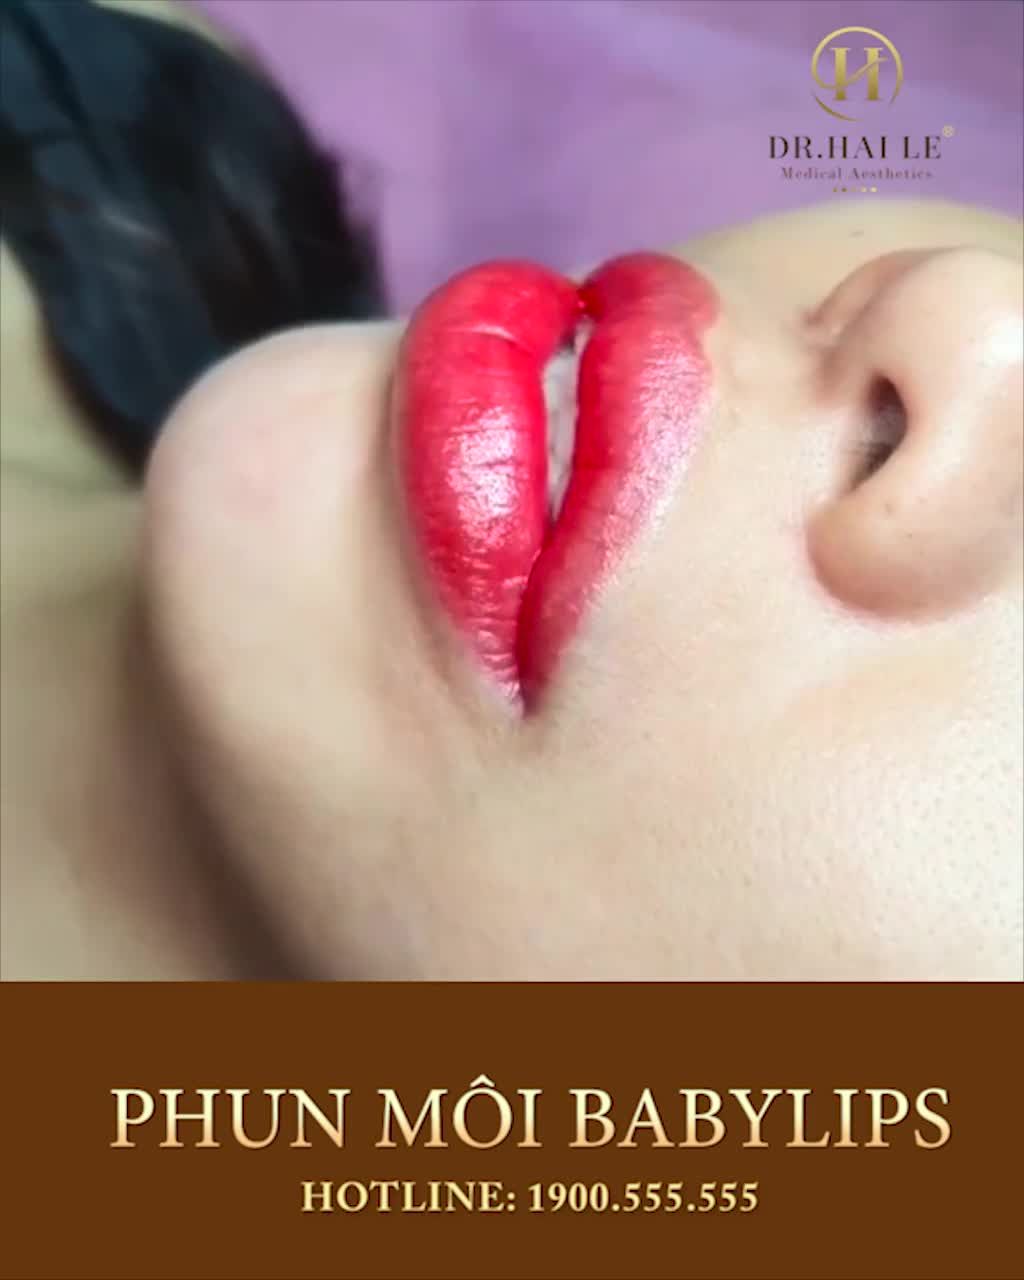 Phun môi baby lips đỉnh thực sự luôn, vừa tiết kiệm thời gian thực hiện, vừa đạt chuẩn yêu cầu của khách mỏng, mịn, đậm, đều